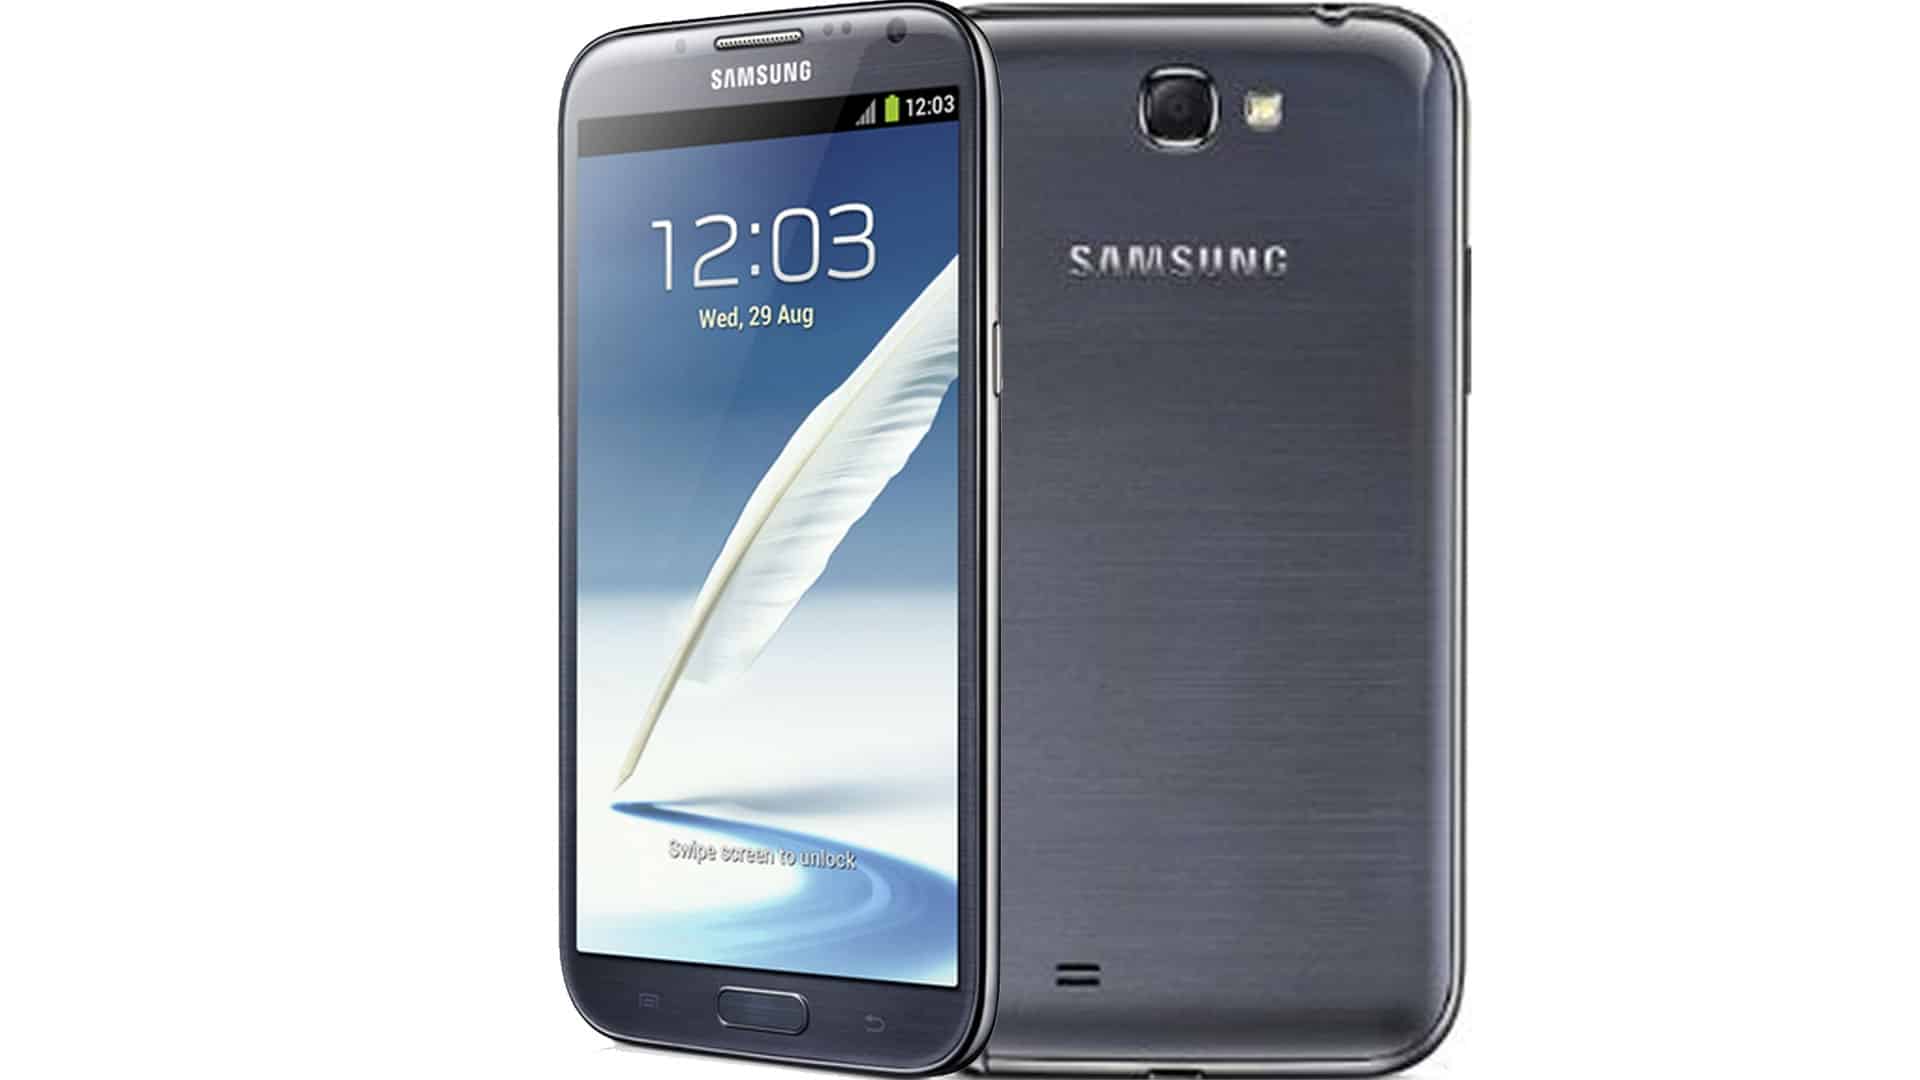 https://www.mistergadget.tech/wp-content/uploads/2012/10/Samsung-Galaxy-Note-2-fronte-retro-MisterGadget-Tech-.jpg